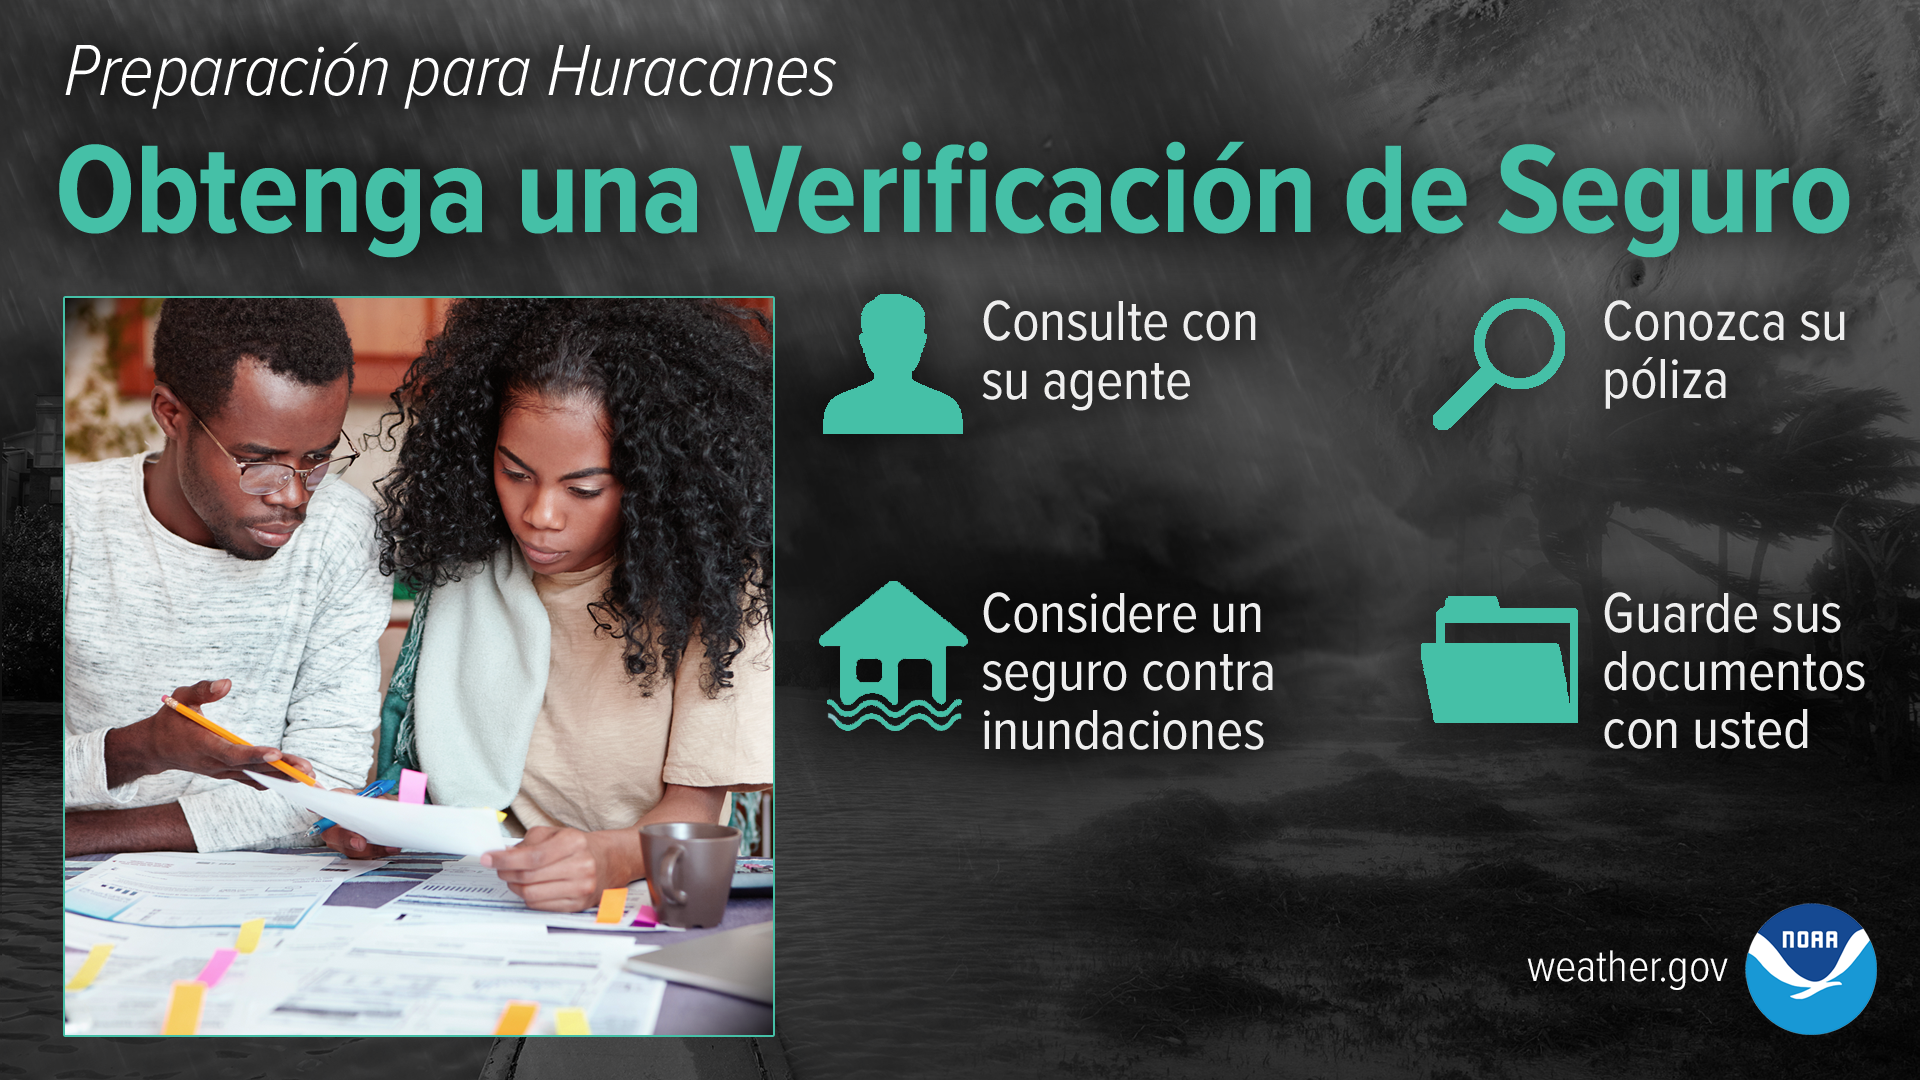 Preparación para Huracanes - Obtenga una Verificación de Seguro: Consulte con su agente. Guarde sus documentos con usted. Conozca su póliza. Considere un seguro contra inundaciones.